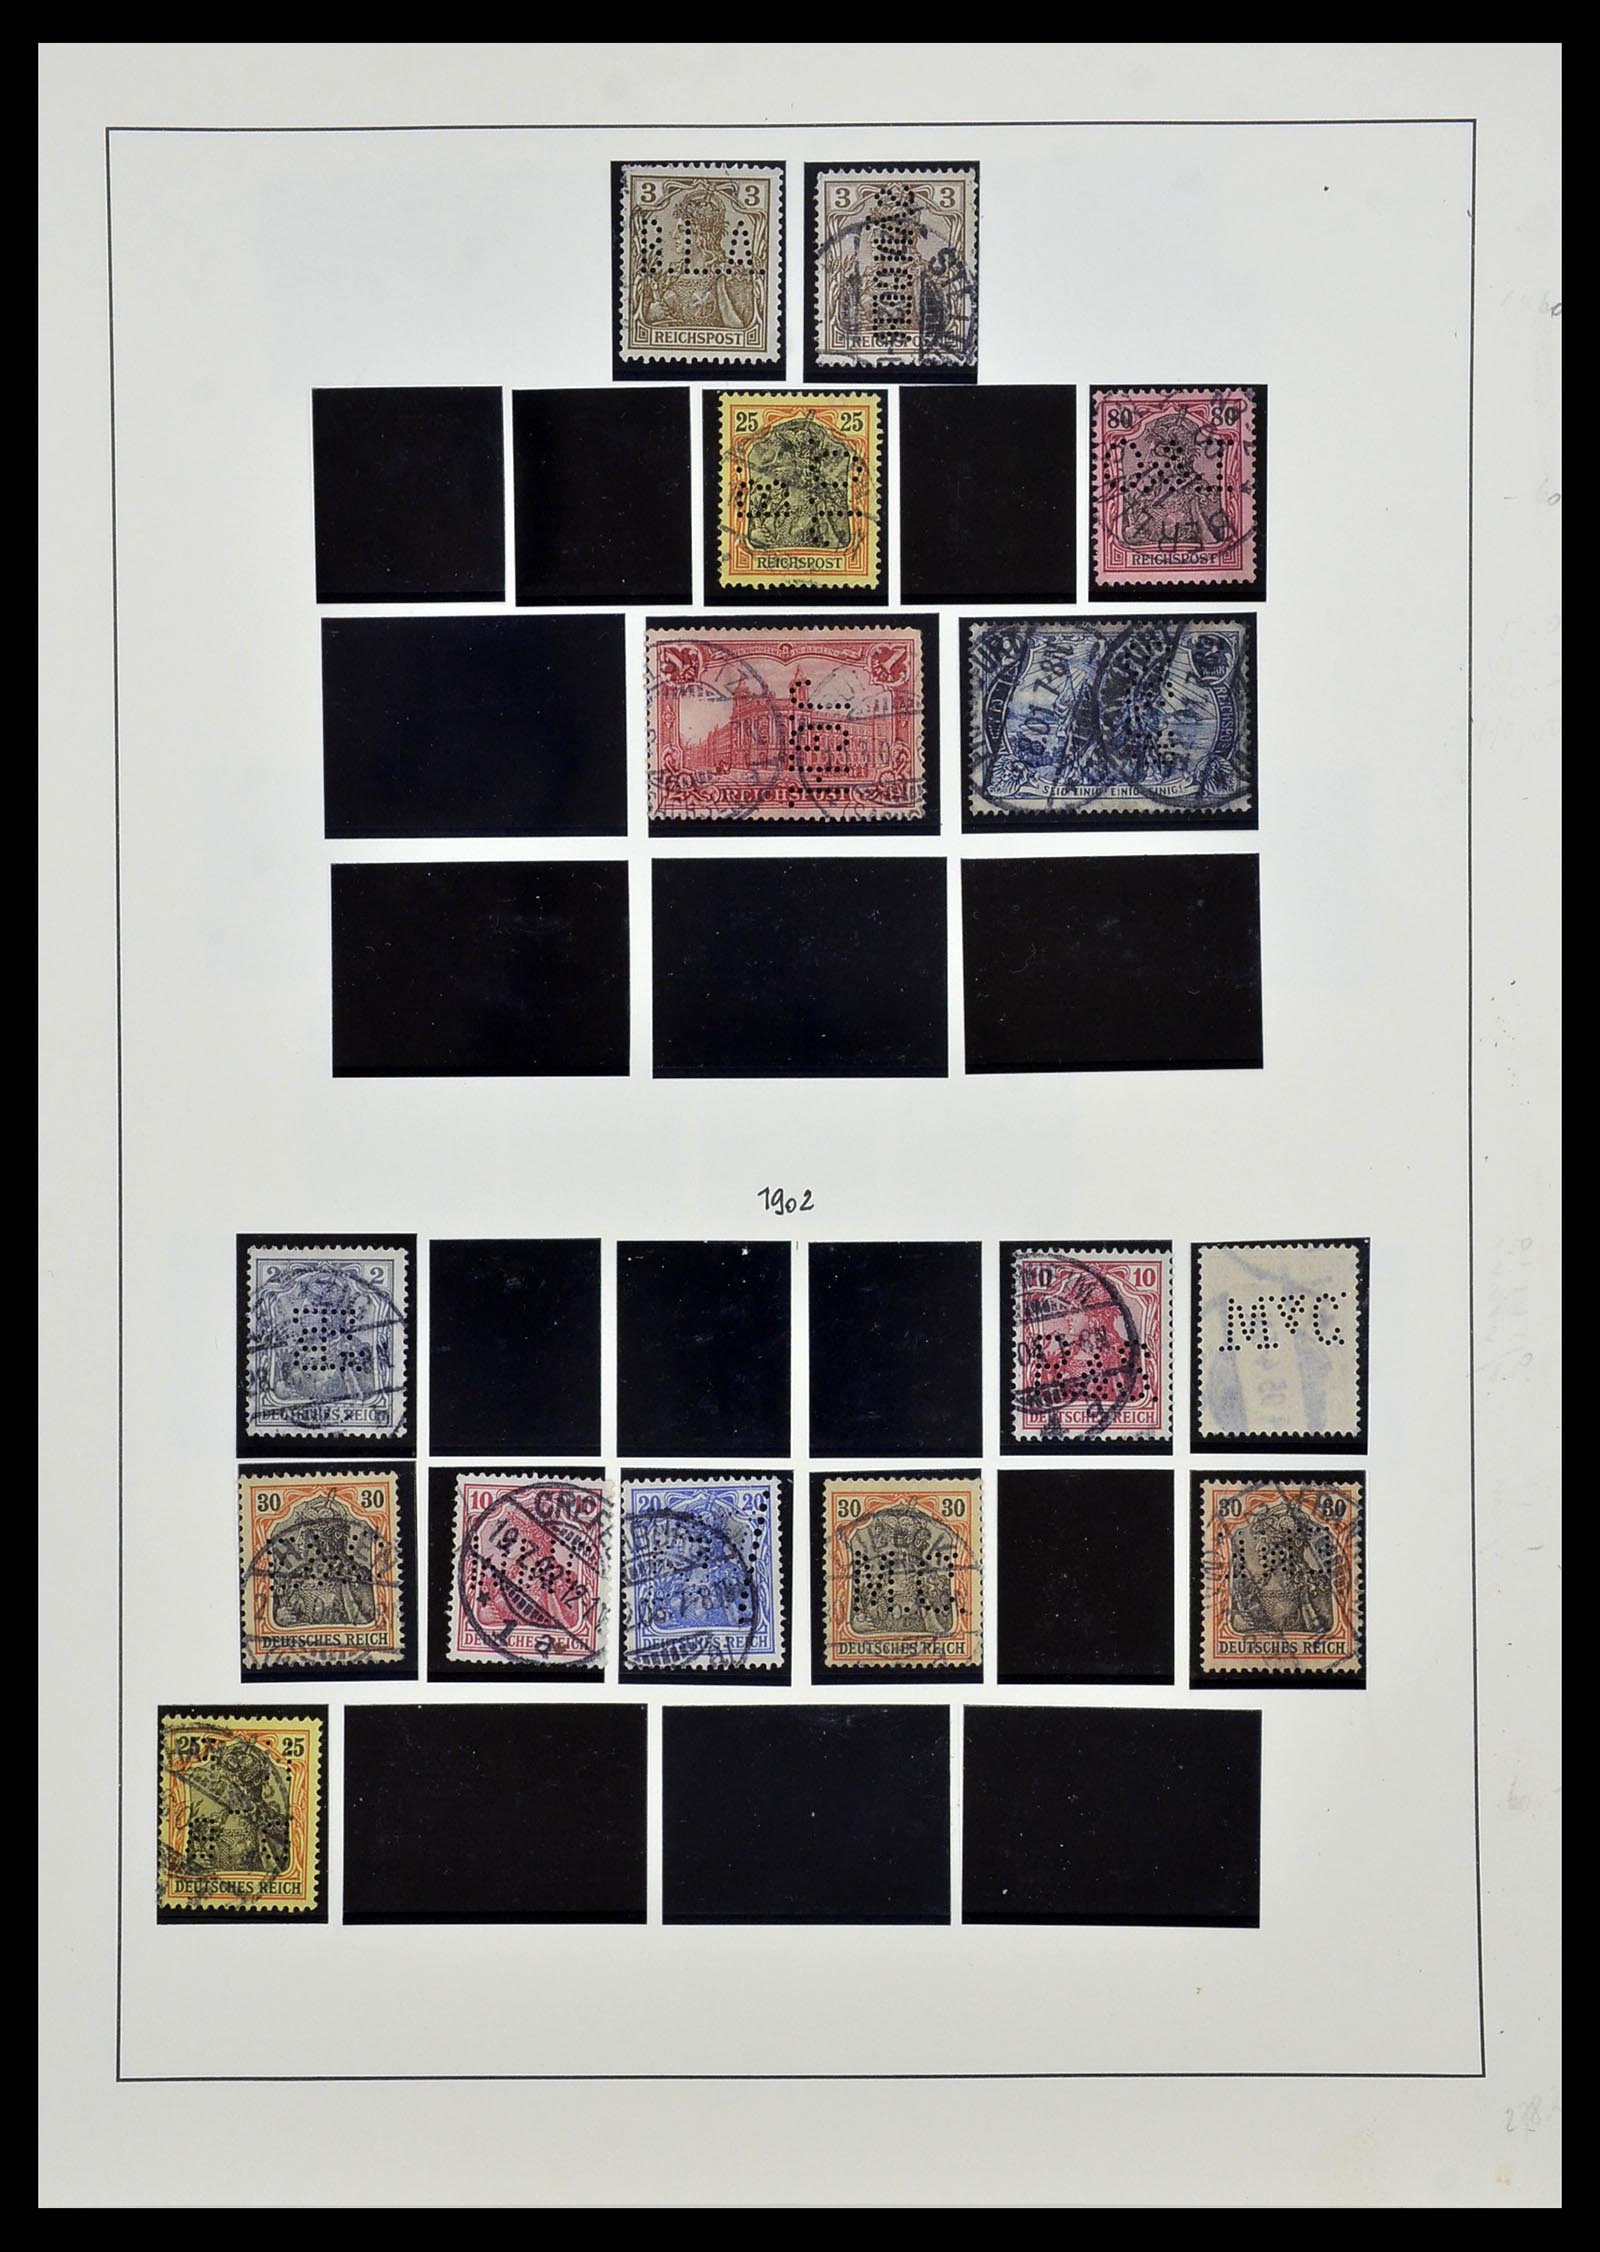 34409 002 - Stamp Collection 34409 German Reich perfins.